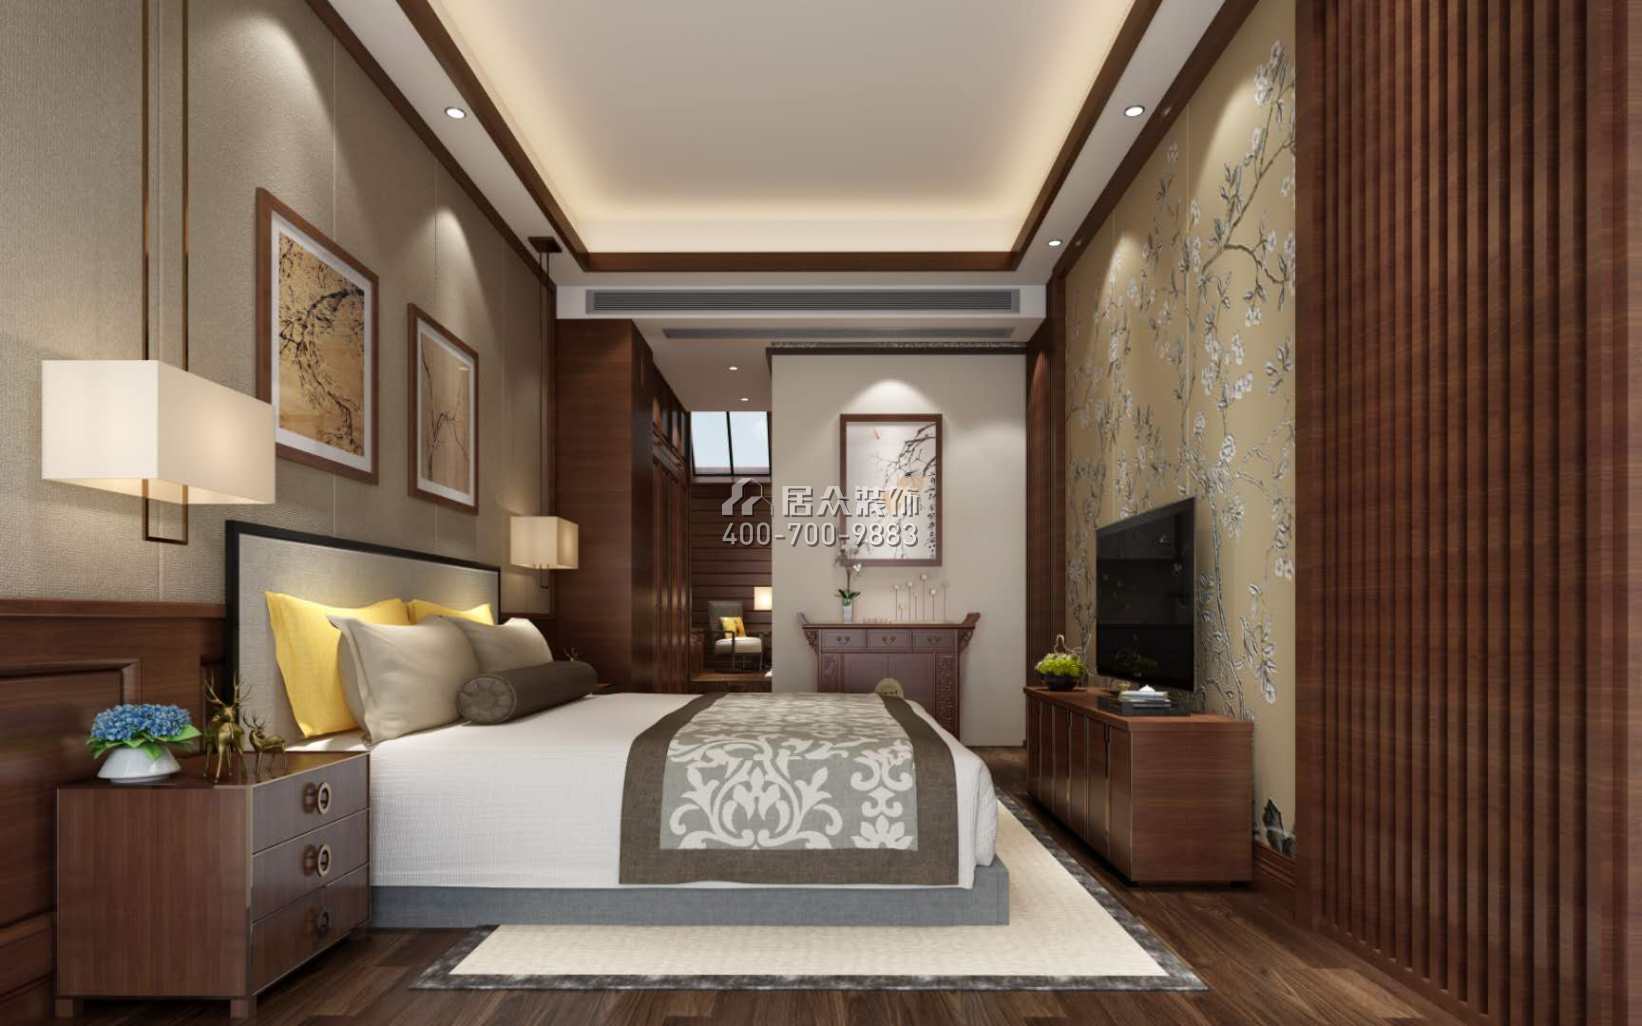 中国铁建山语城350平方米中式风格别墅户型卧室装修效果图